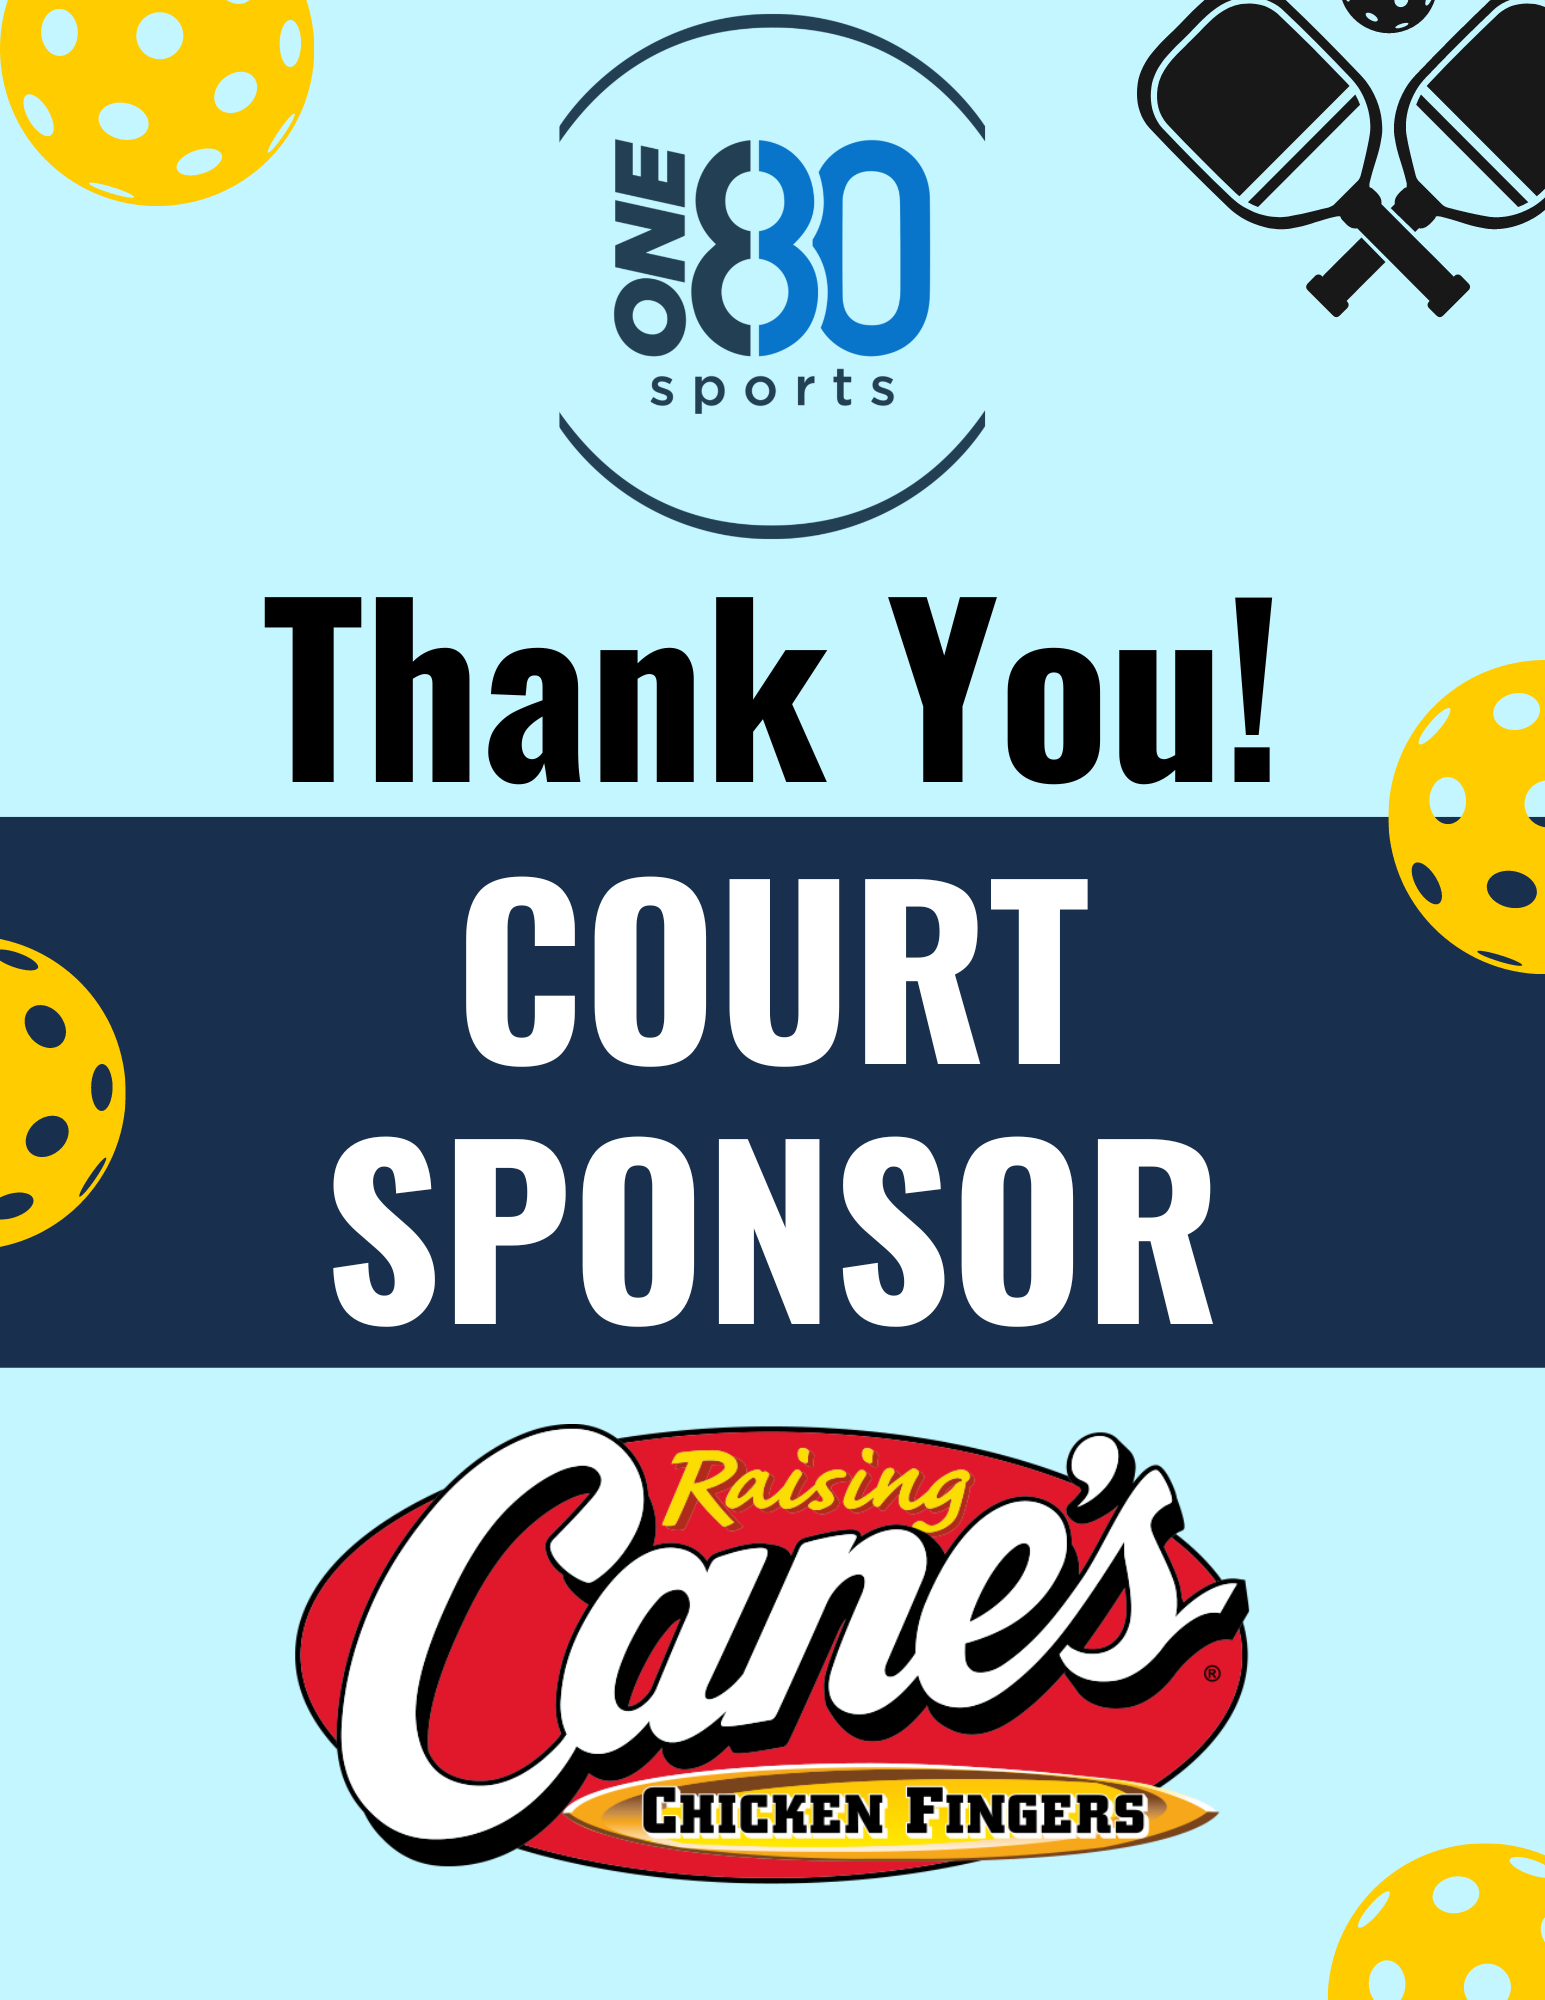 Raising Canes - court sponsor.png